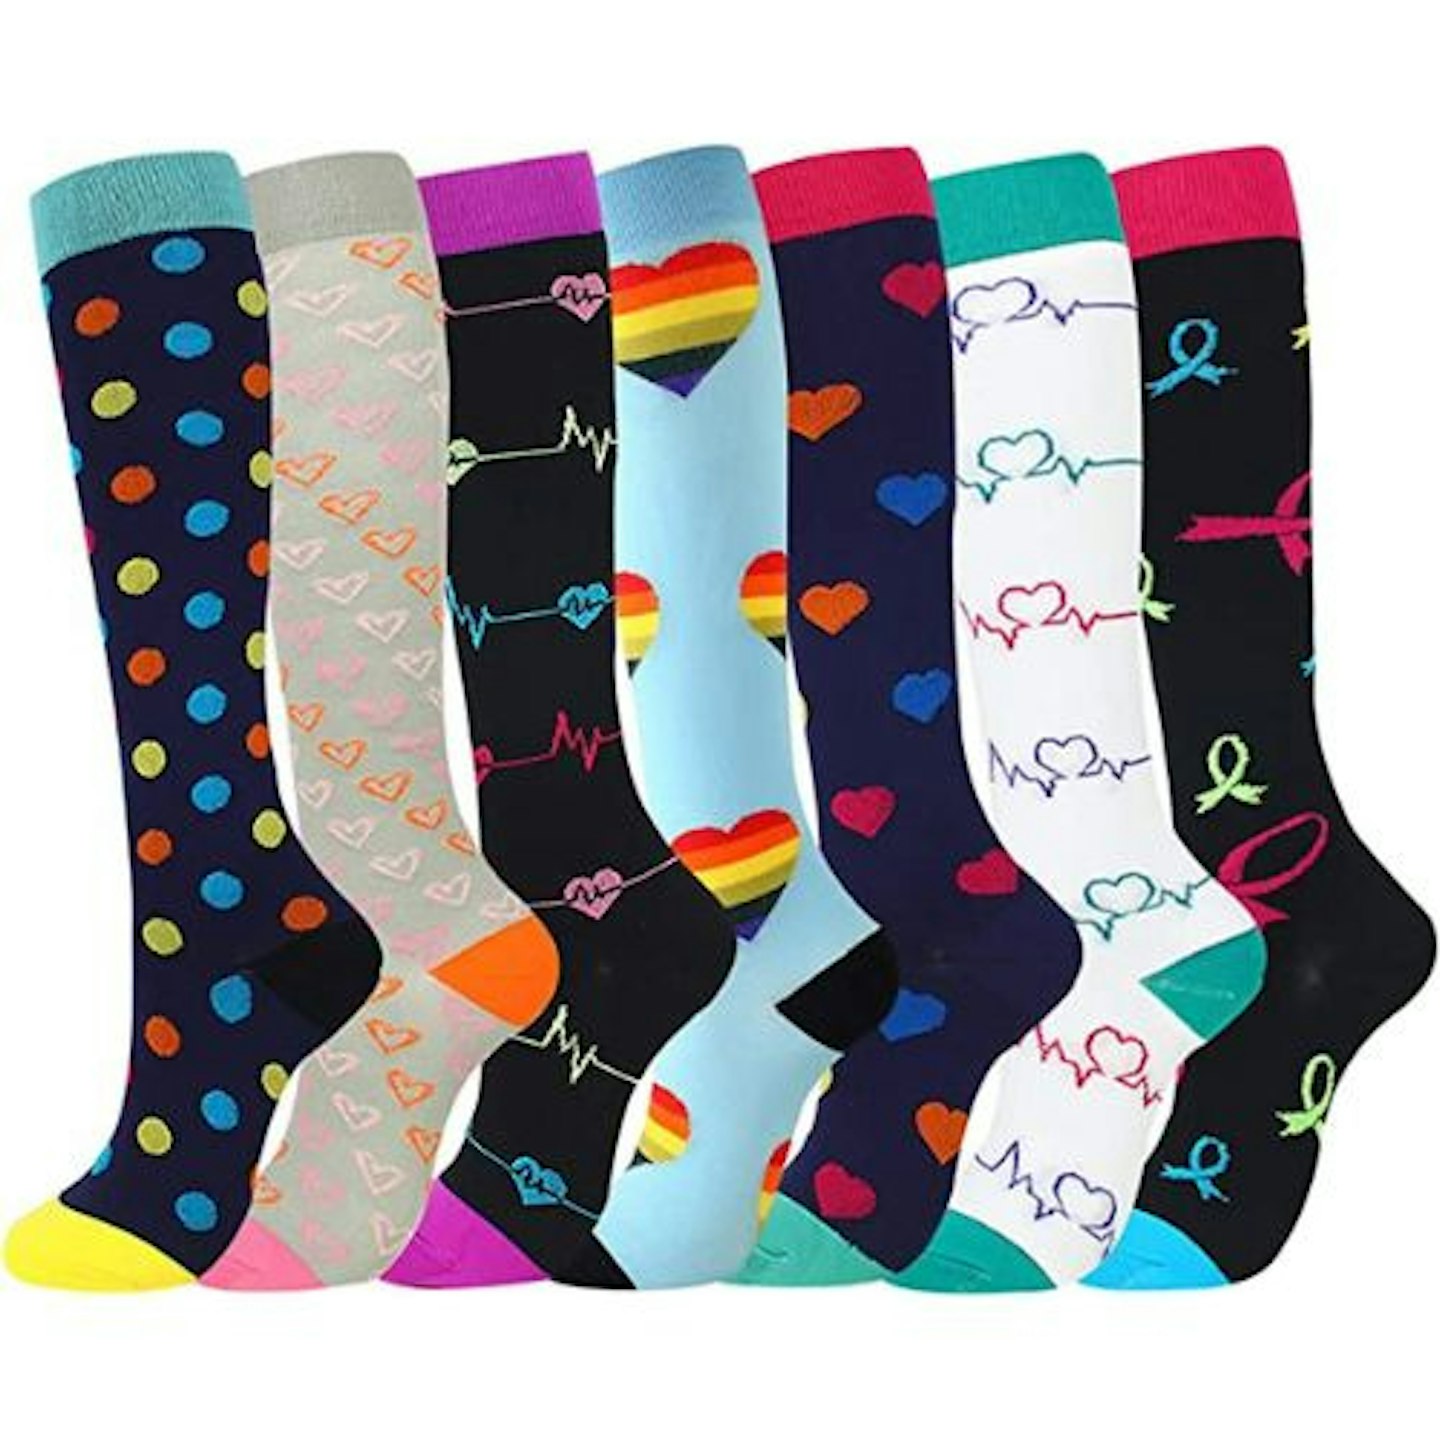 best-compression-socks-yyw-socks-men-women